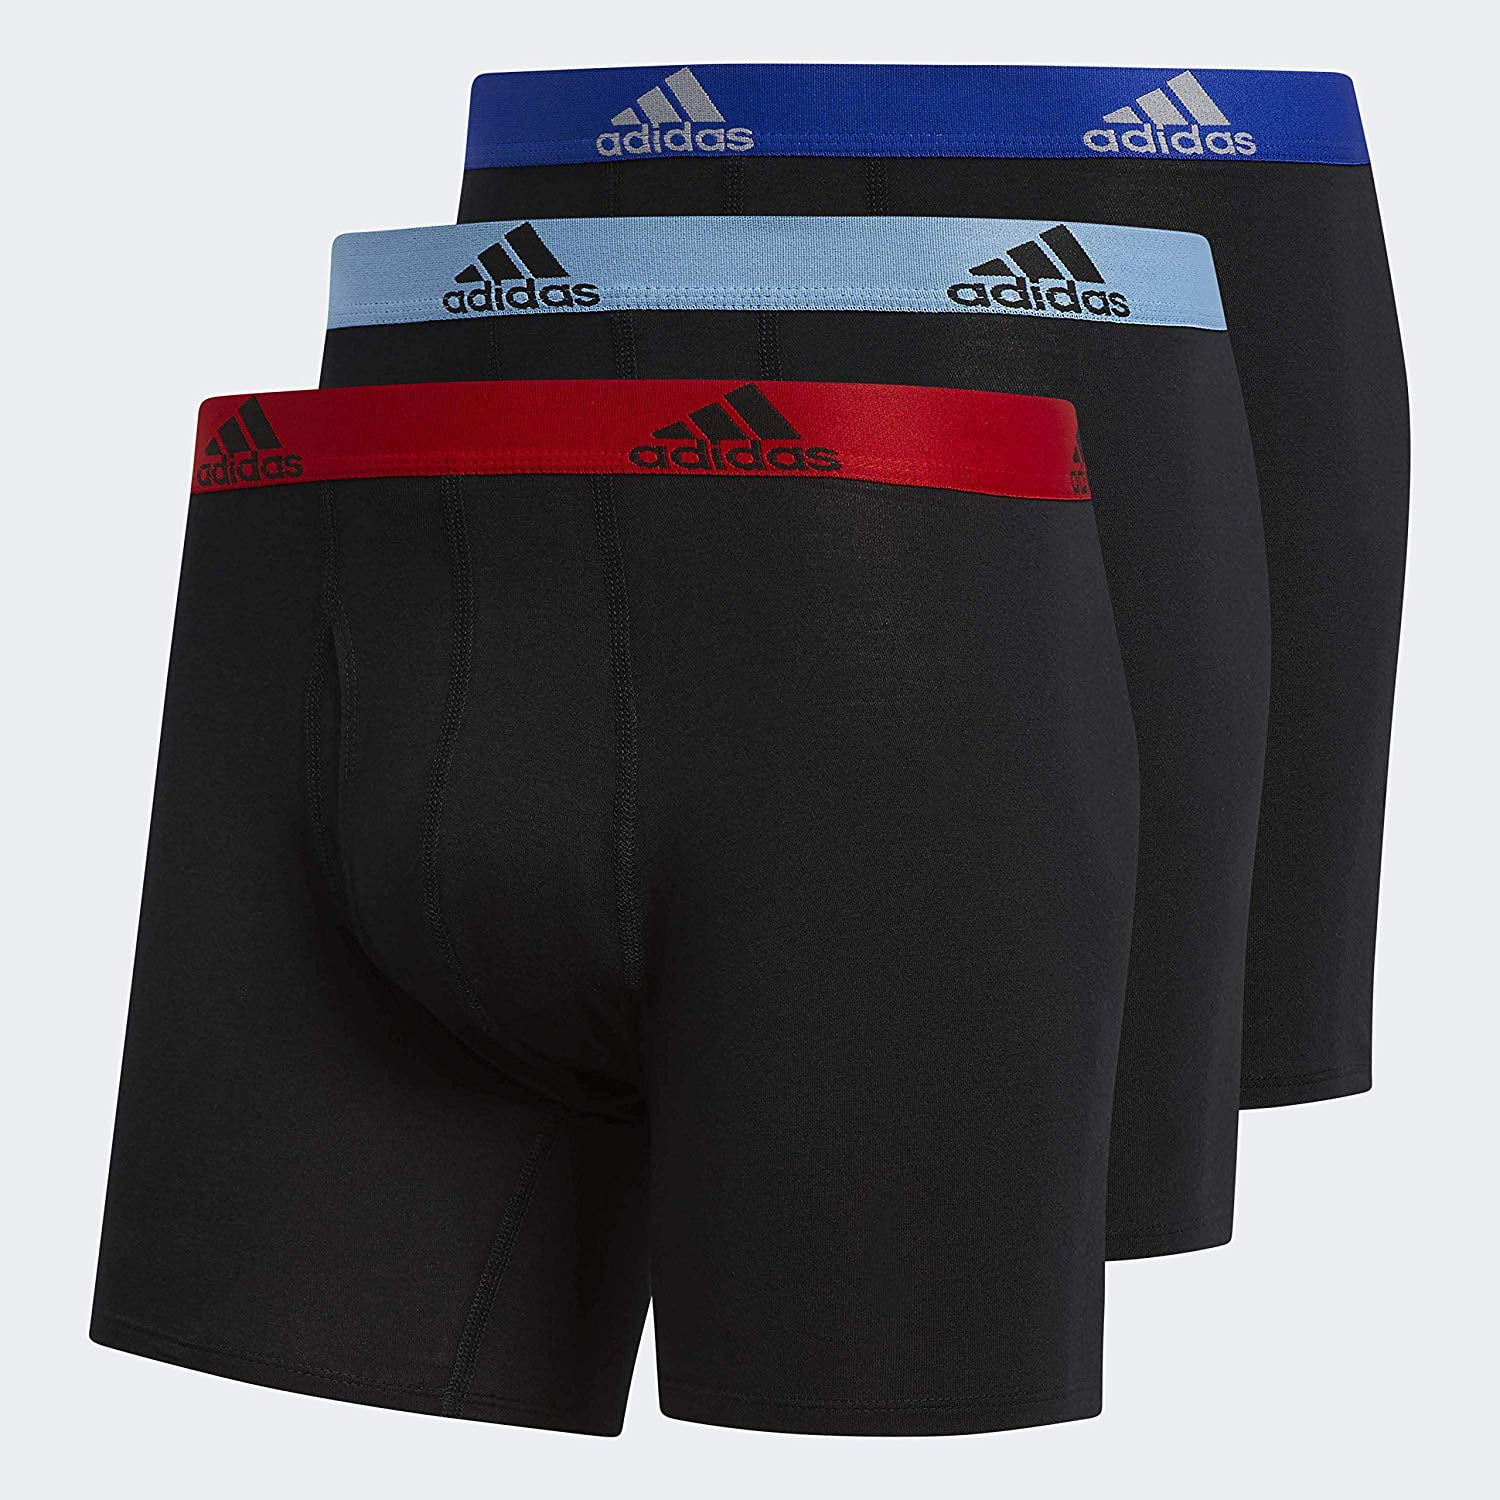 adidas Men's Stretch Cotton Boxer Briefs Underwear (3-Pack) | Walmart ...